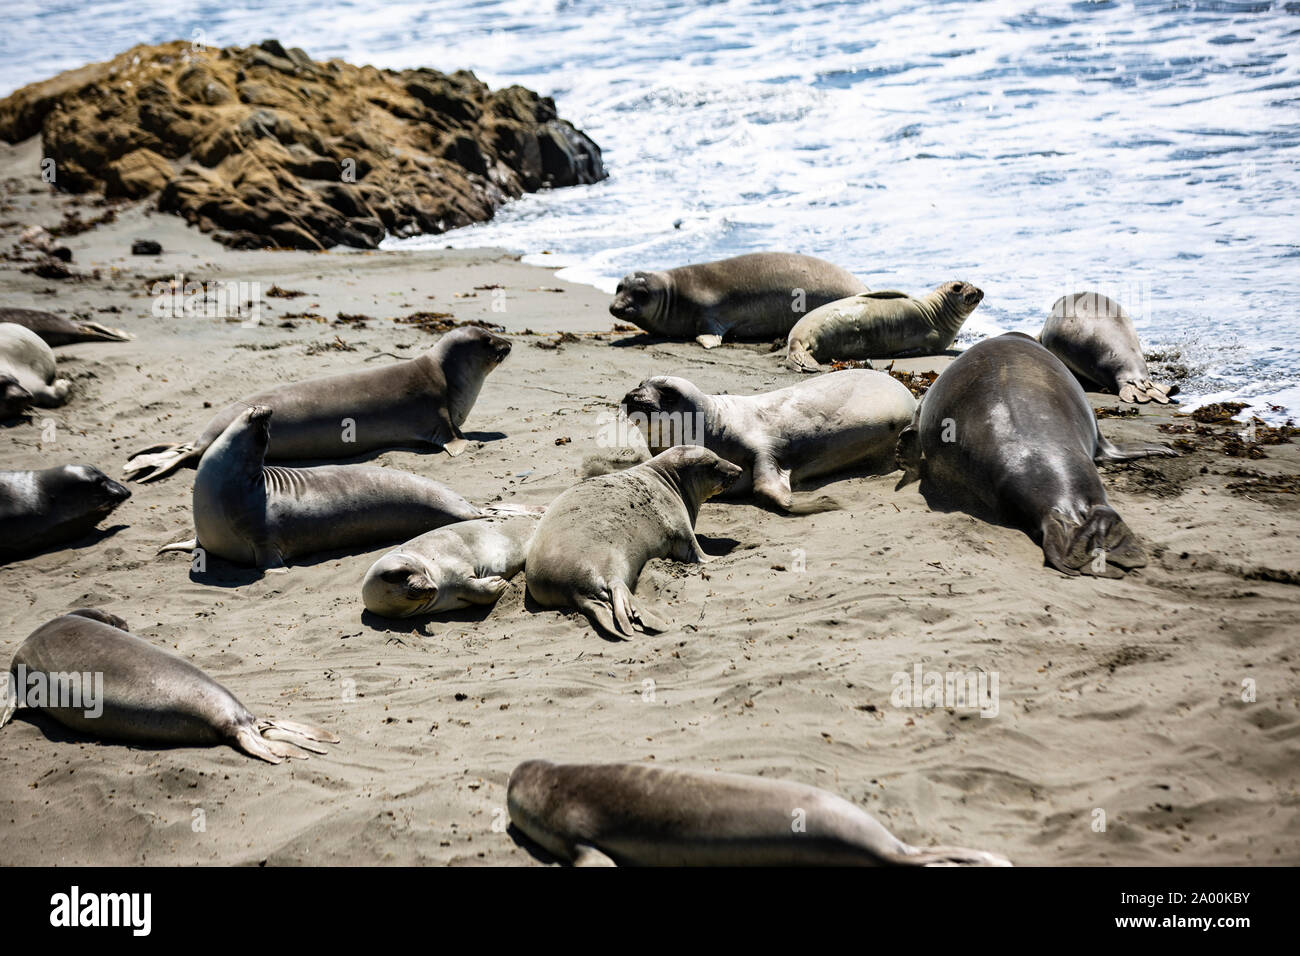 Seelöwen und See-Elefanten liegen am Strand des kalifornischen Küstenabschnitts Big Sur. Die Tiere faulenzen in der Sonne, lassen sich von den Wellen Stock Photo